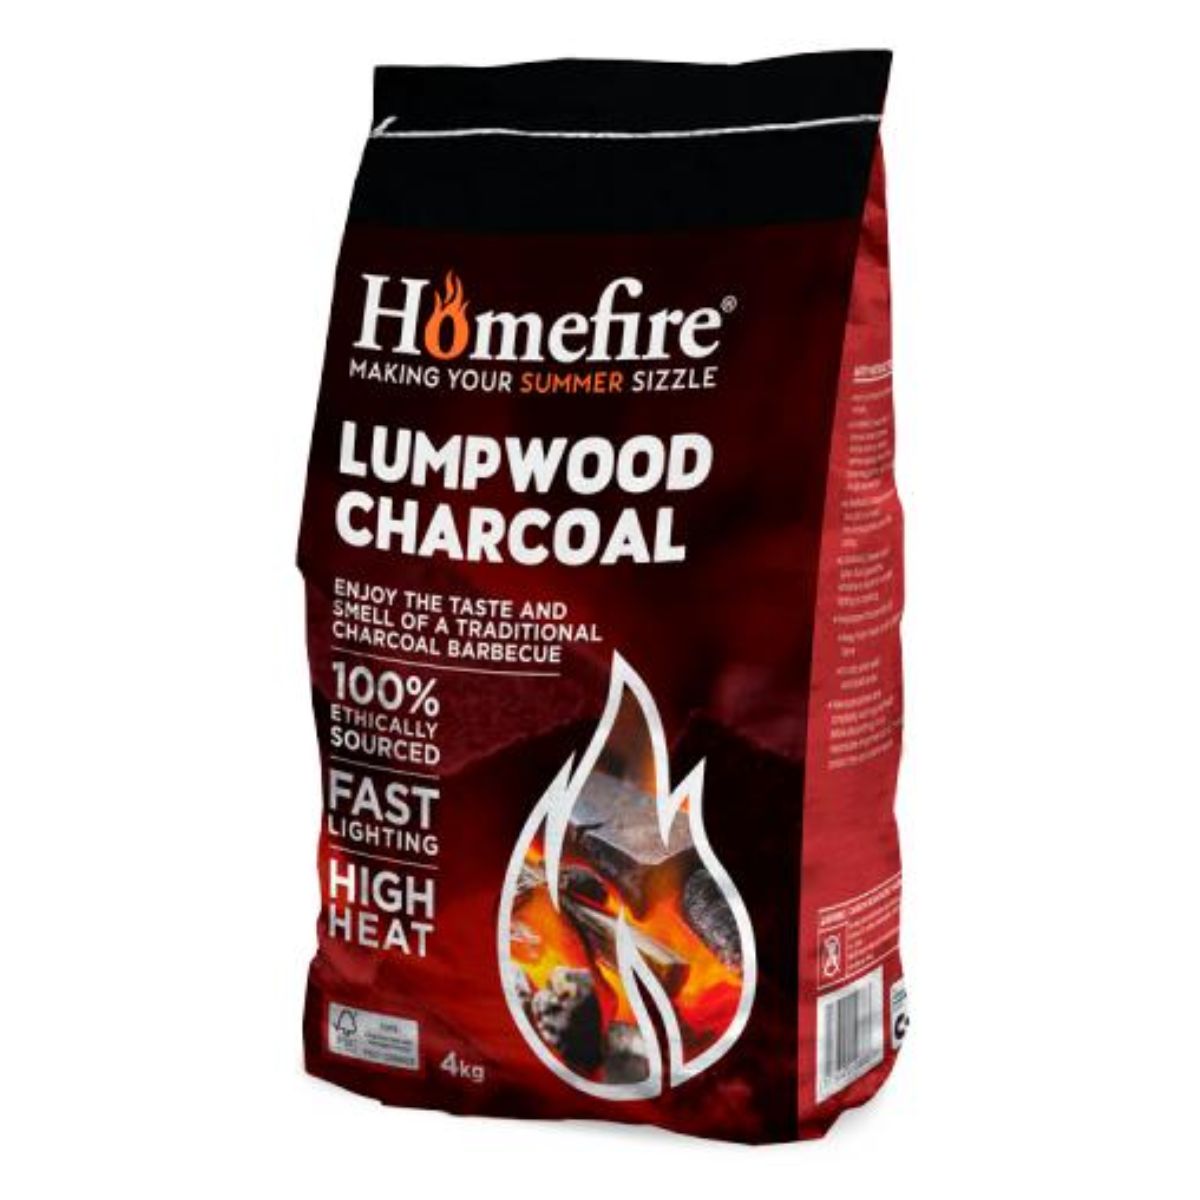 Homefire - Lumpwood Charcoal - 4kg.